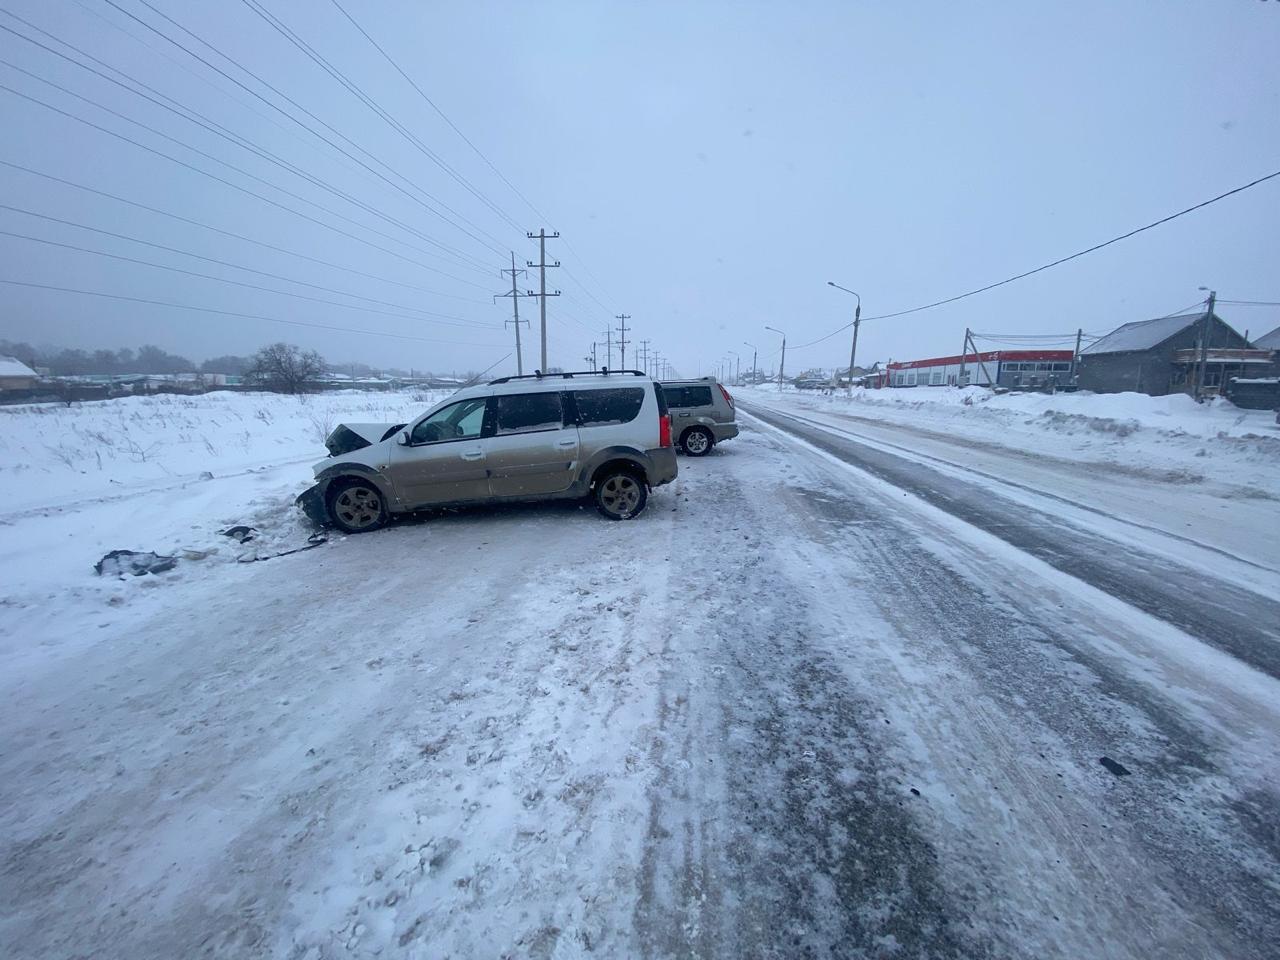 Трое пострадавших. Массовое ДТП произошло на Западном шоссе Магнитогорска в снегопад